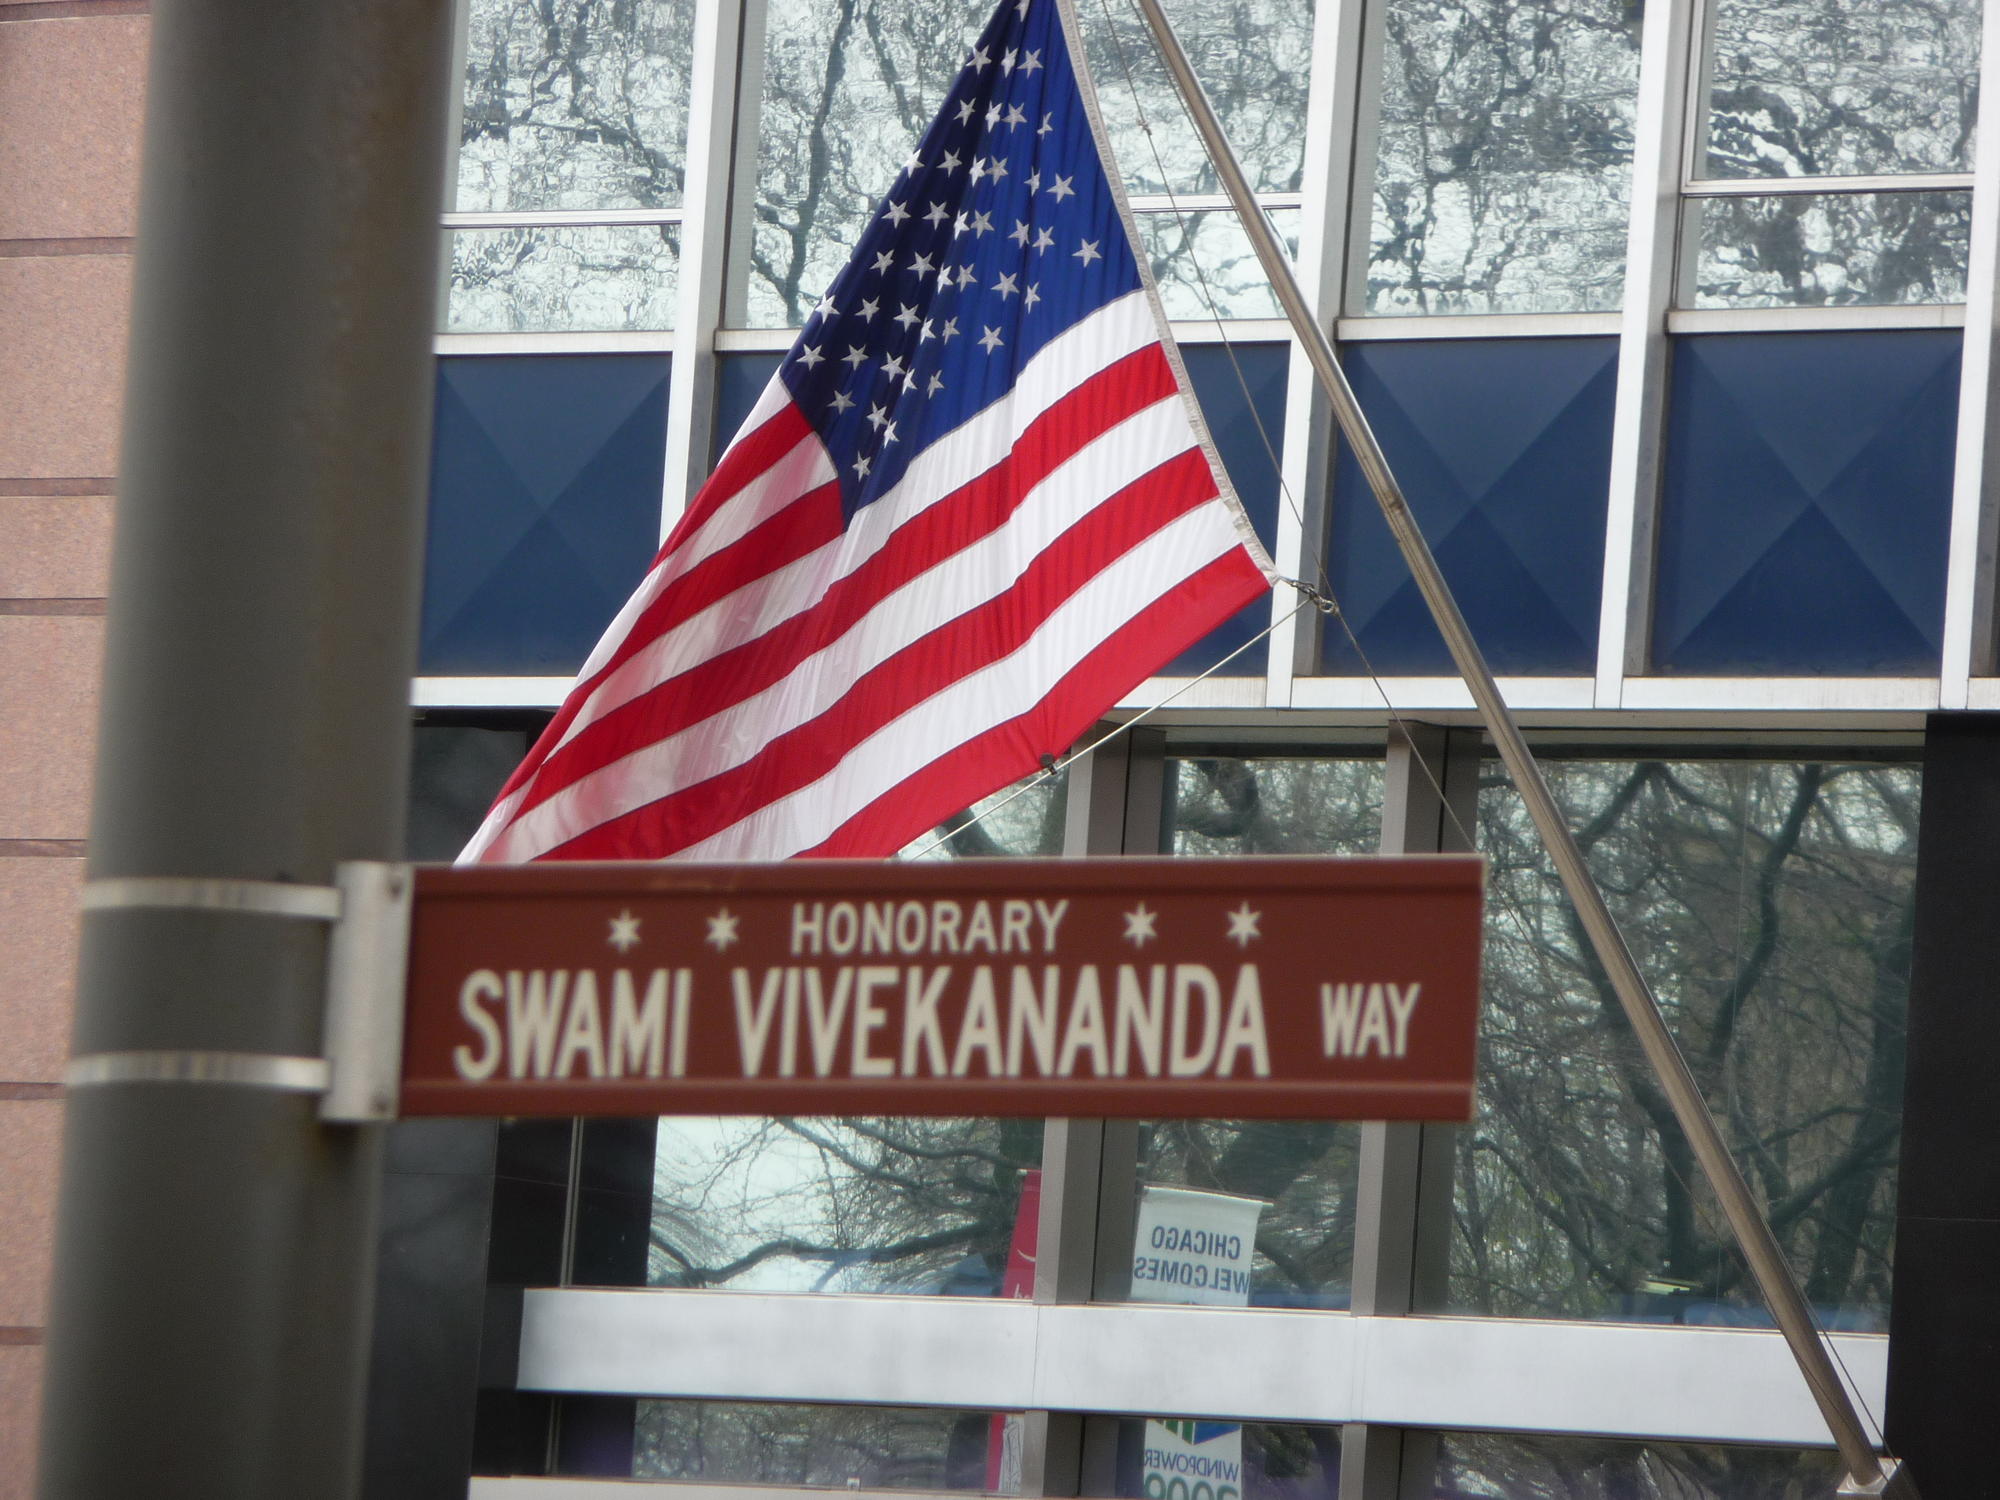 Honorary Swami Vivekananda Way sign